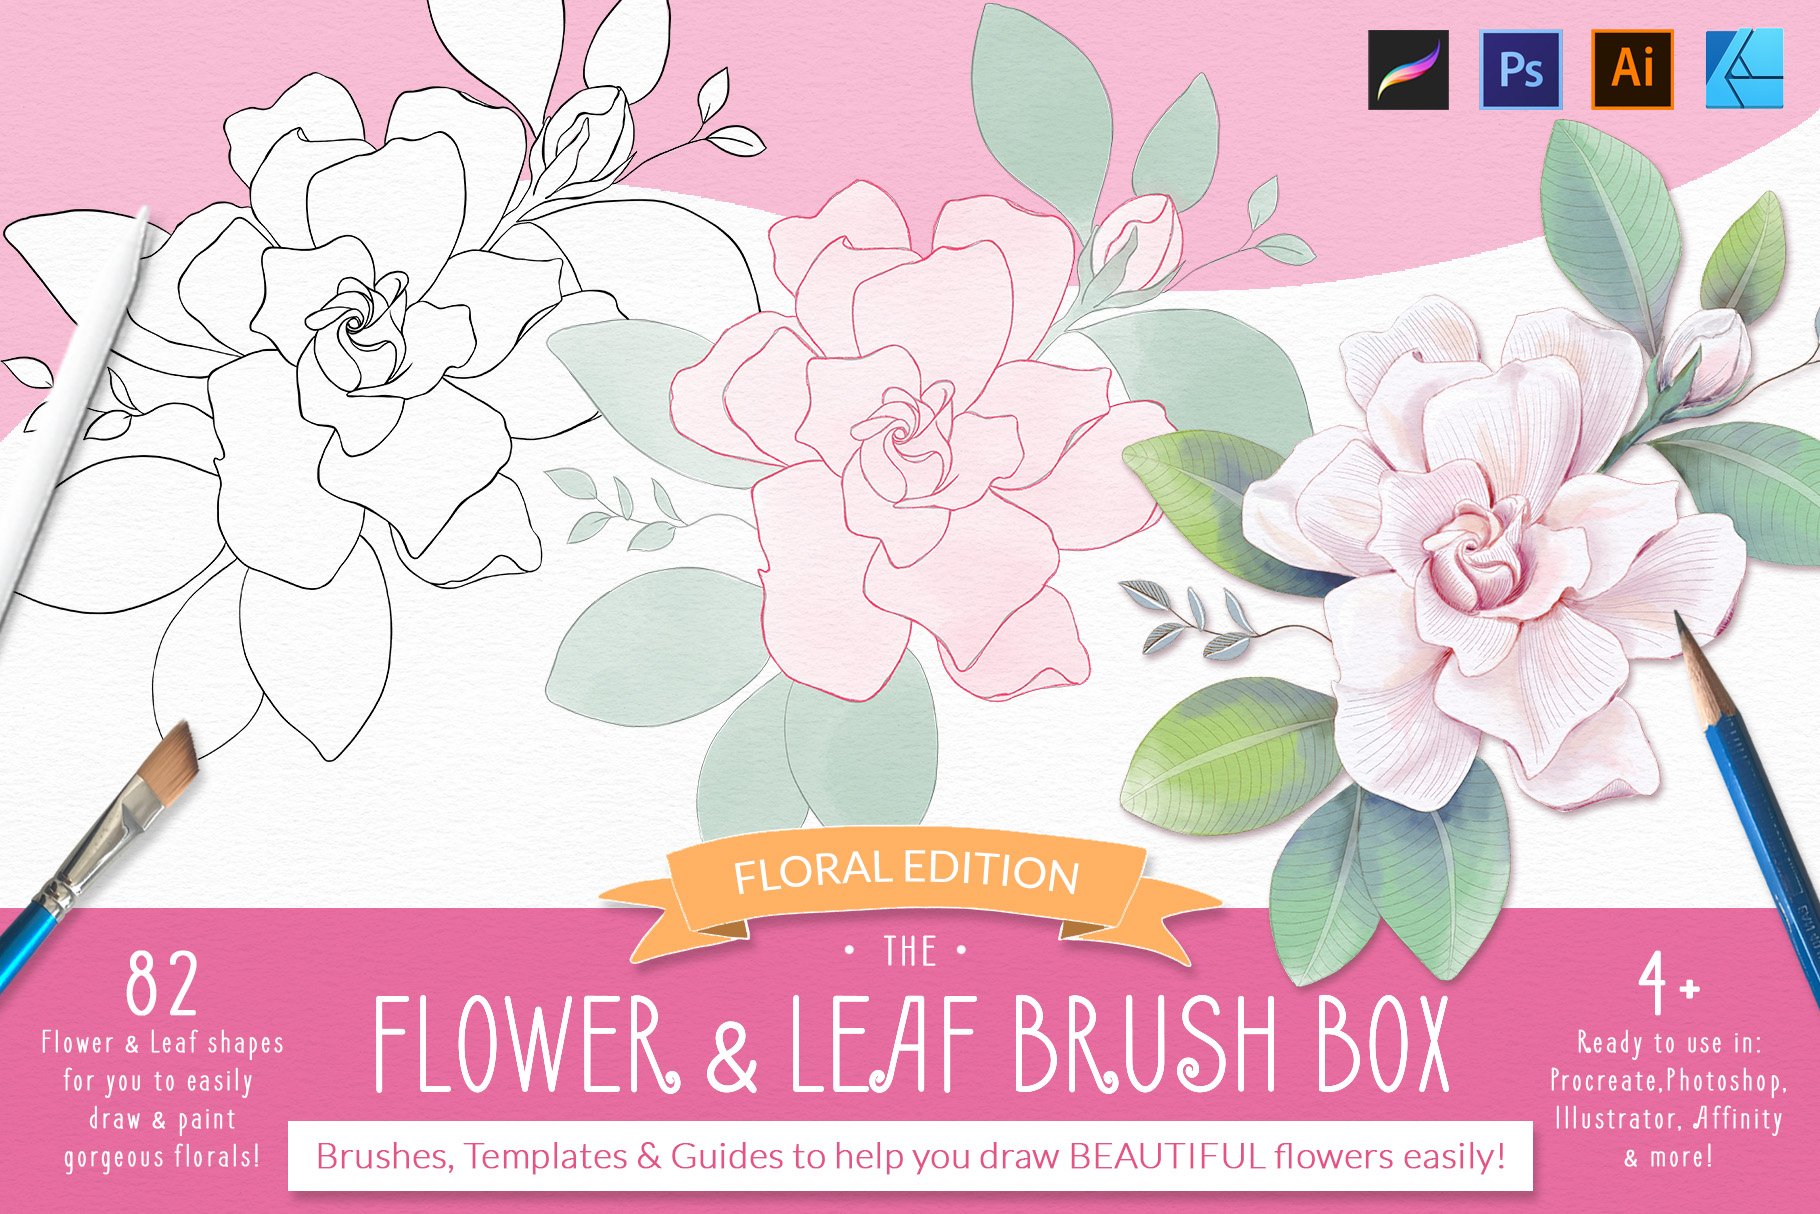 Procreate Flower & Leaf Brush Boxcover image.